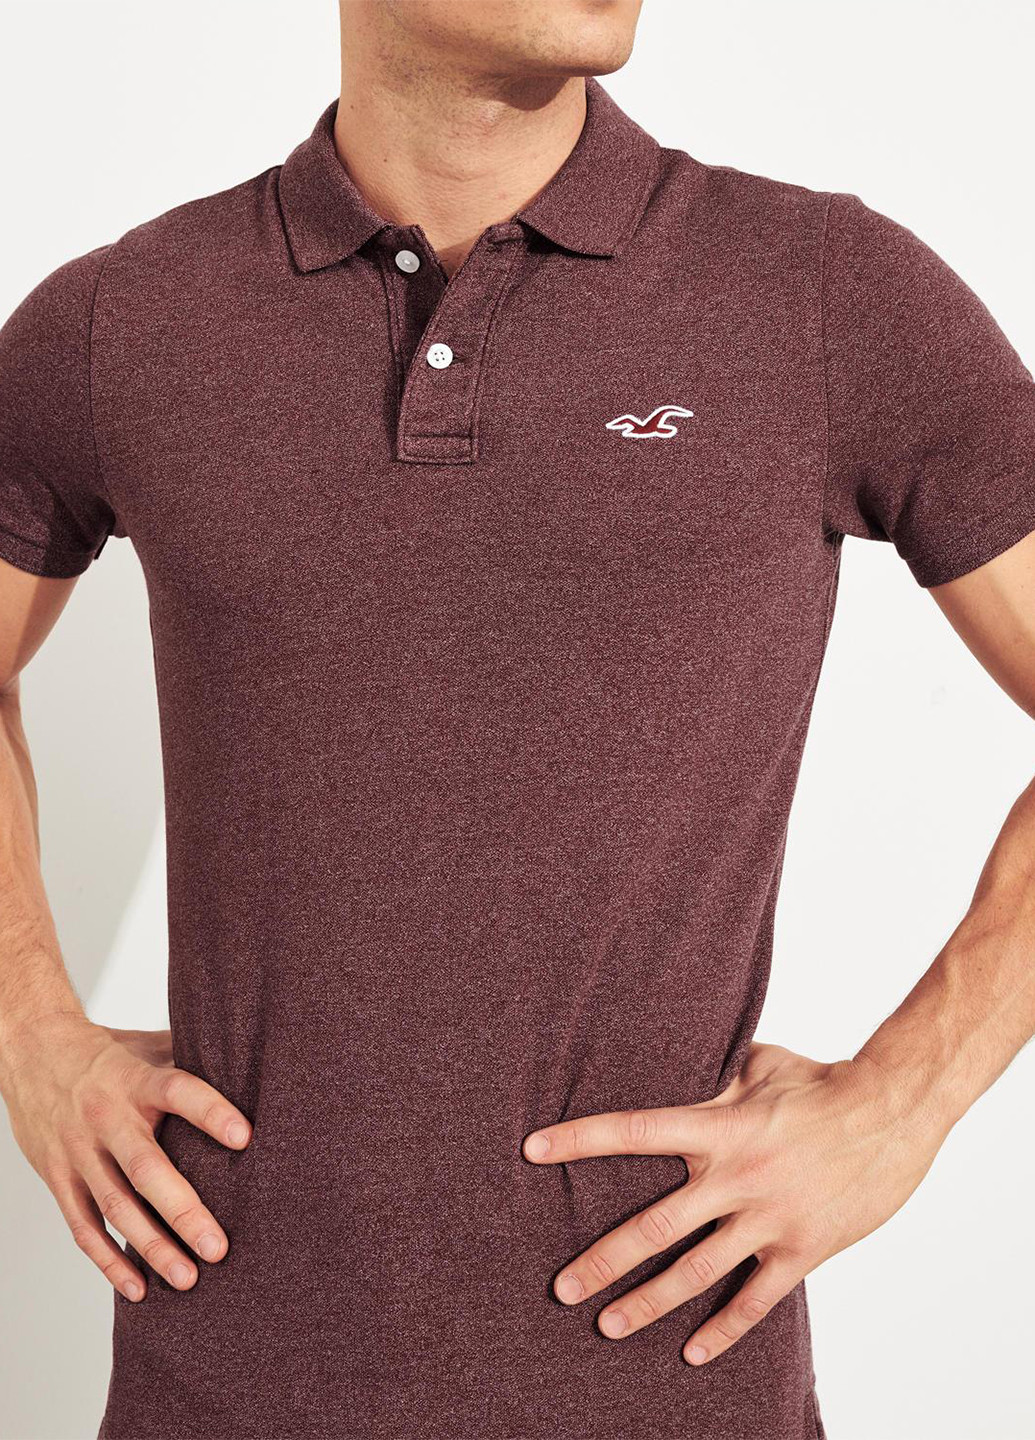 Бордовая футболка-поло для мужчин Hollister меланжевая